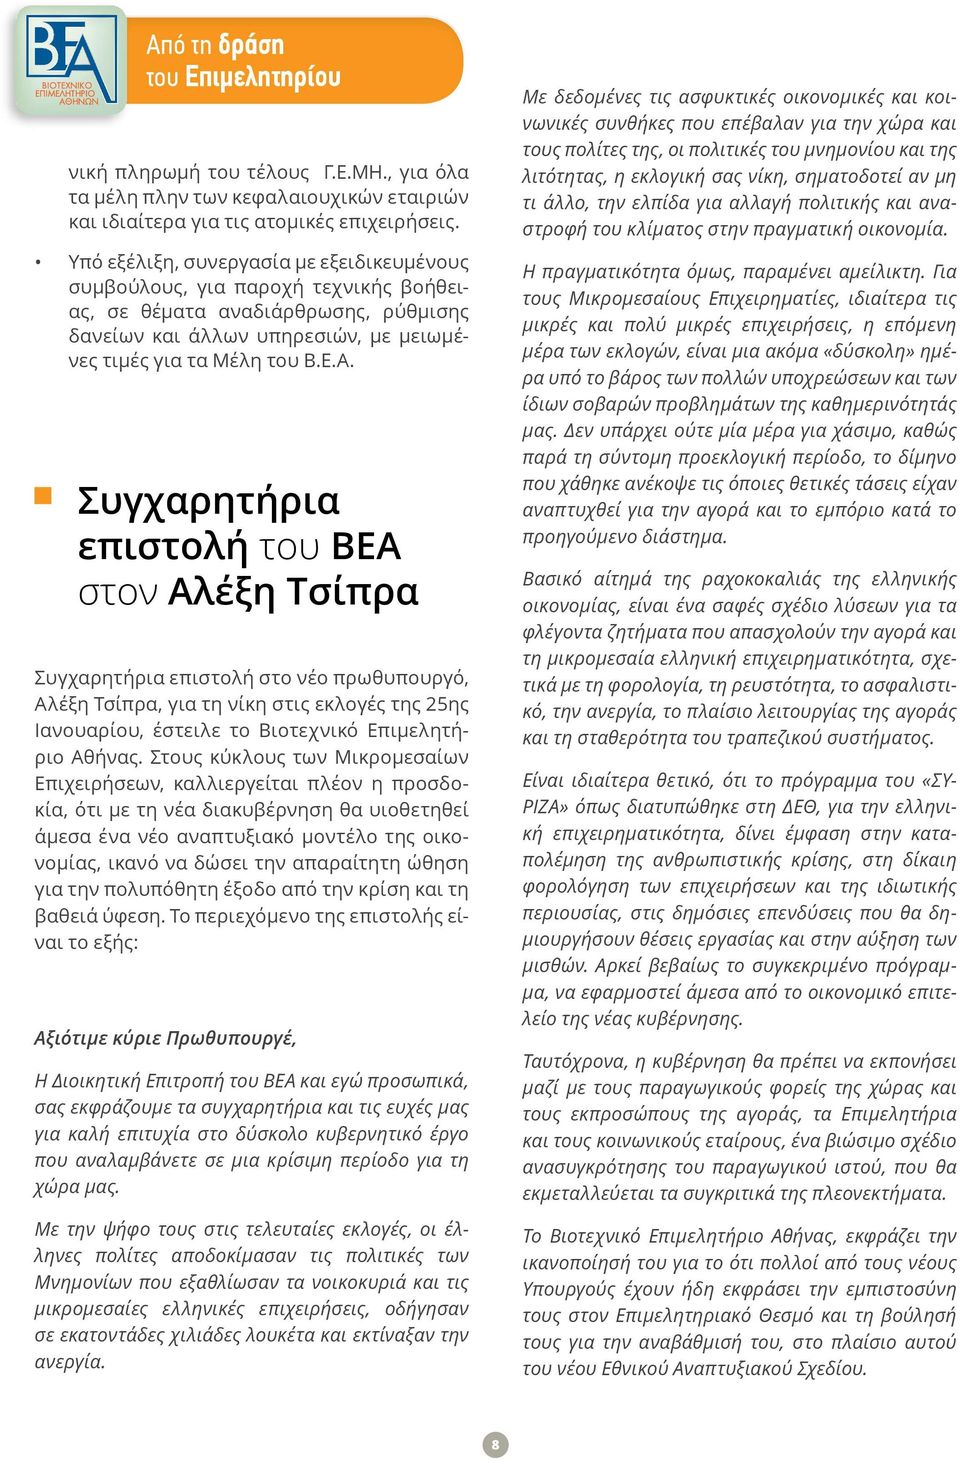 Συγχαρητήρια επιστολή του ΒΕΑ στον Αλέξη Τσίπρα Συγχαρητήρια επιστολή στο νέο πρωθυπουργό, Αλέξη Τσίπρα, για τη νίκη στις εκλογές της 25ης Ιανουαρίου, έστειλε το Βιοτεχνικό Επιμελητήριο Αθήνας.